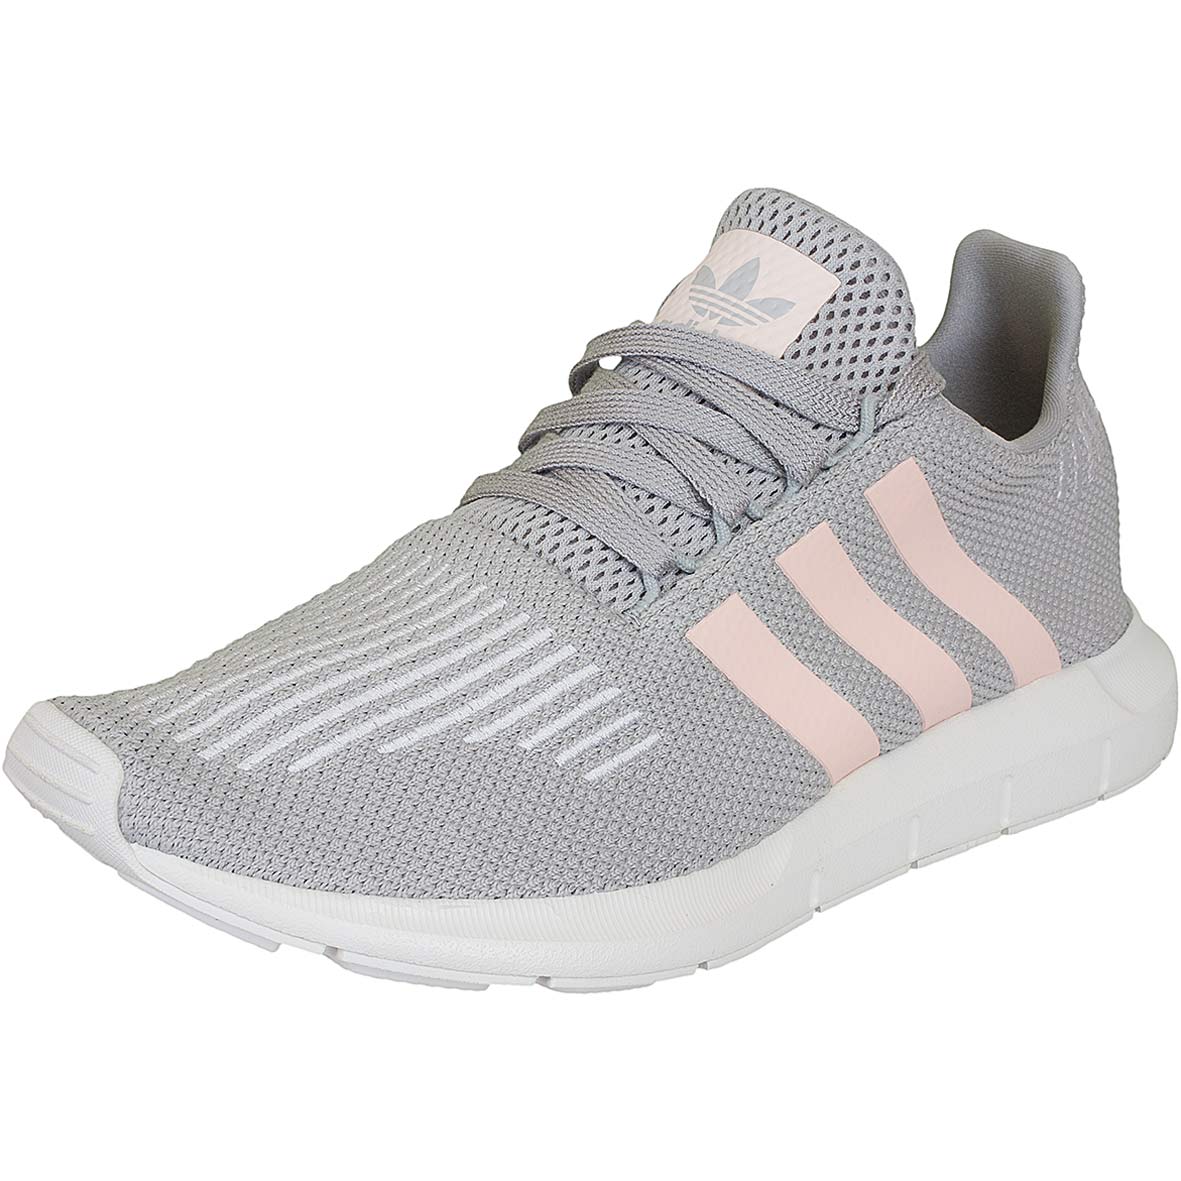 ☆ Adidas Originals Damen Sneaker Swift Run grau/pink - hier bestellen!